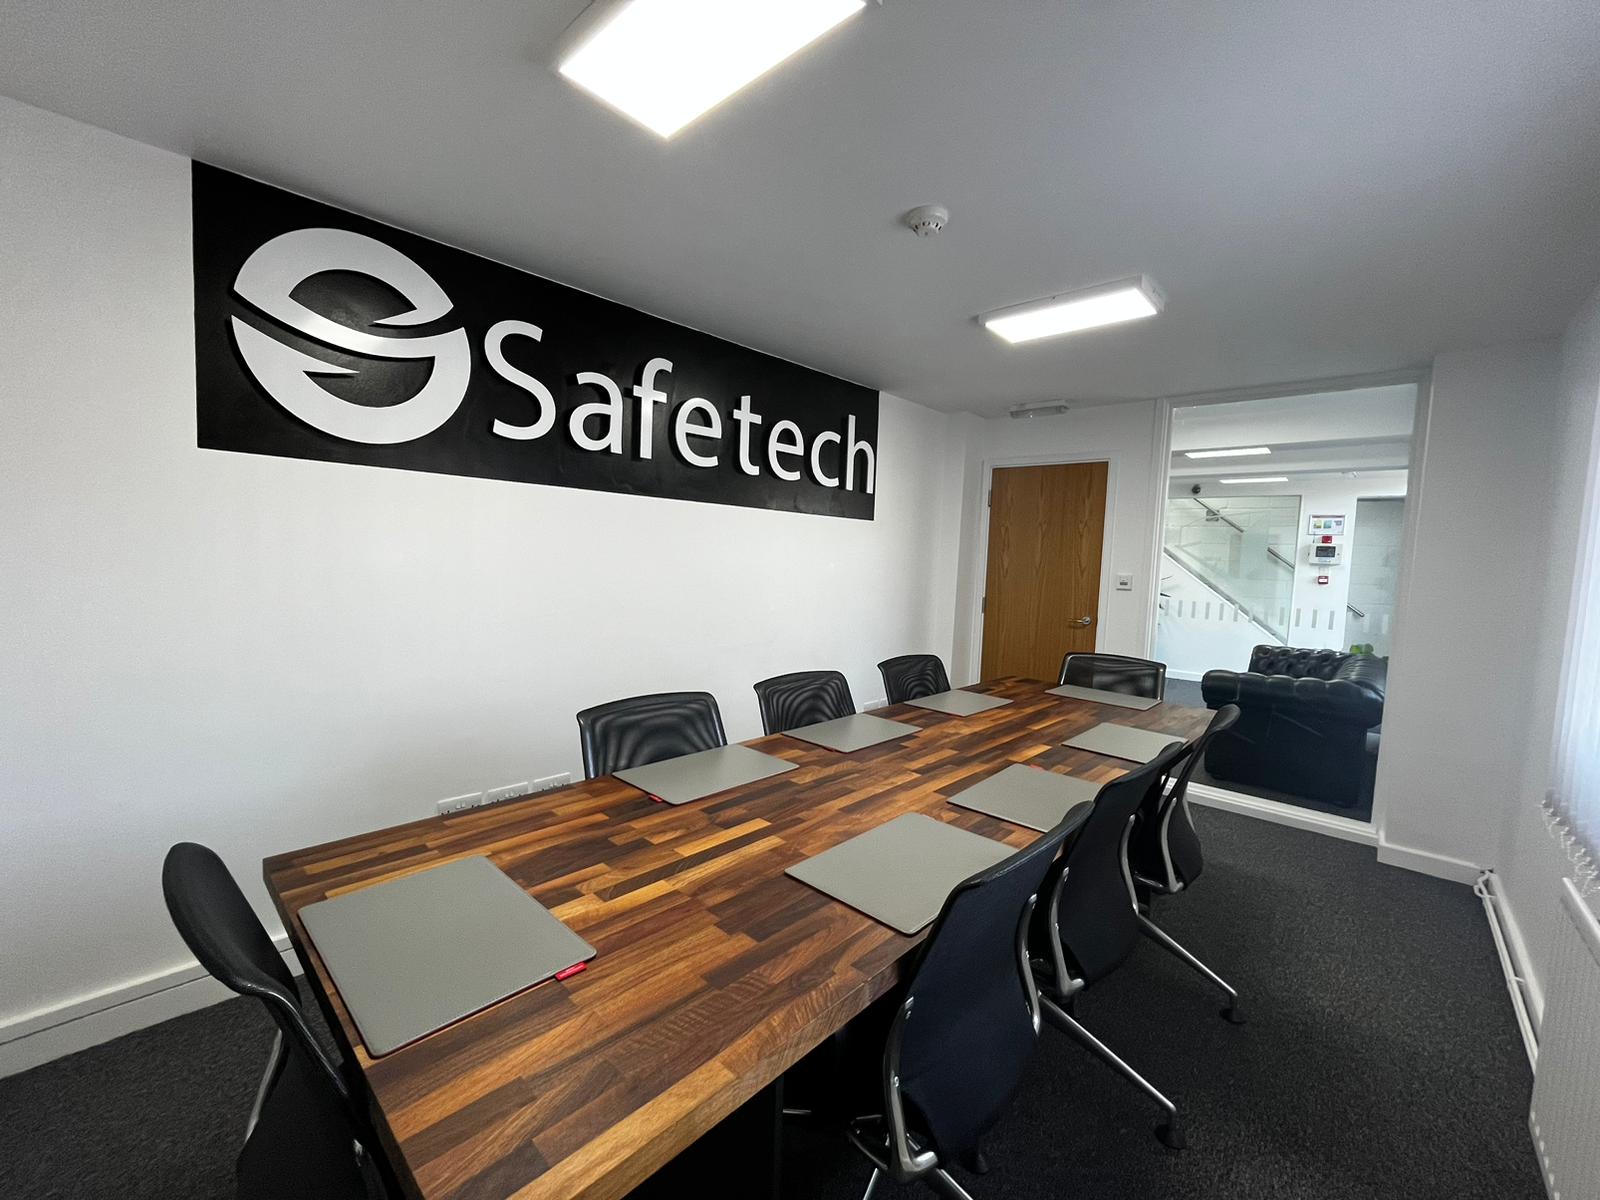 Safetech LTD